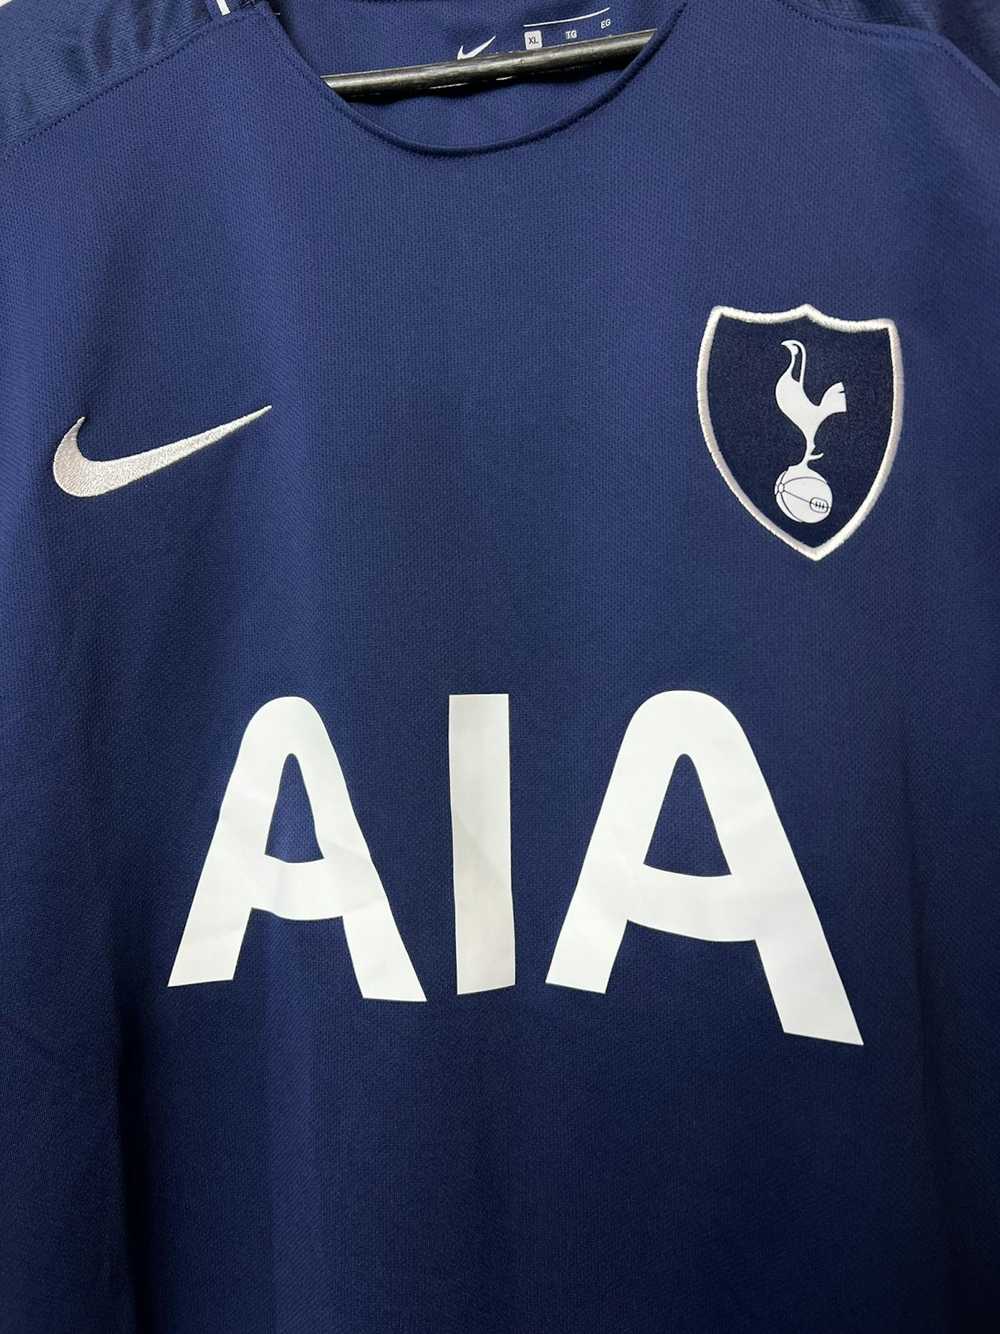 Nike Tshirt Nike Tottenham 2017/2018 football - image 2